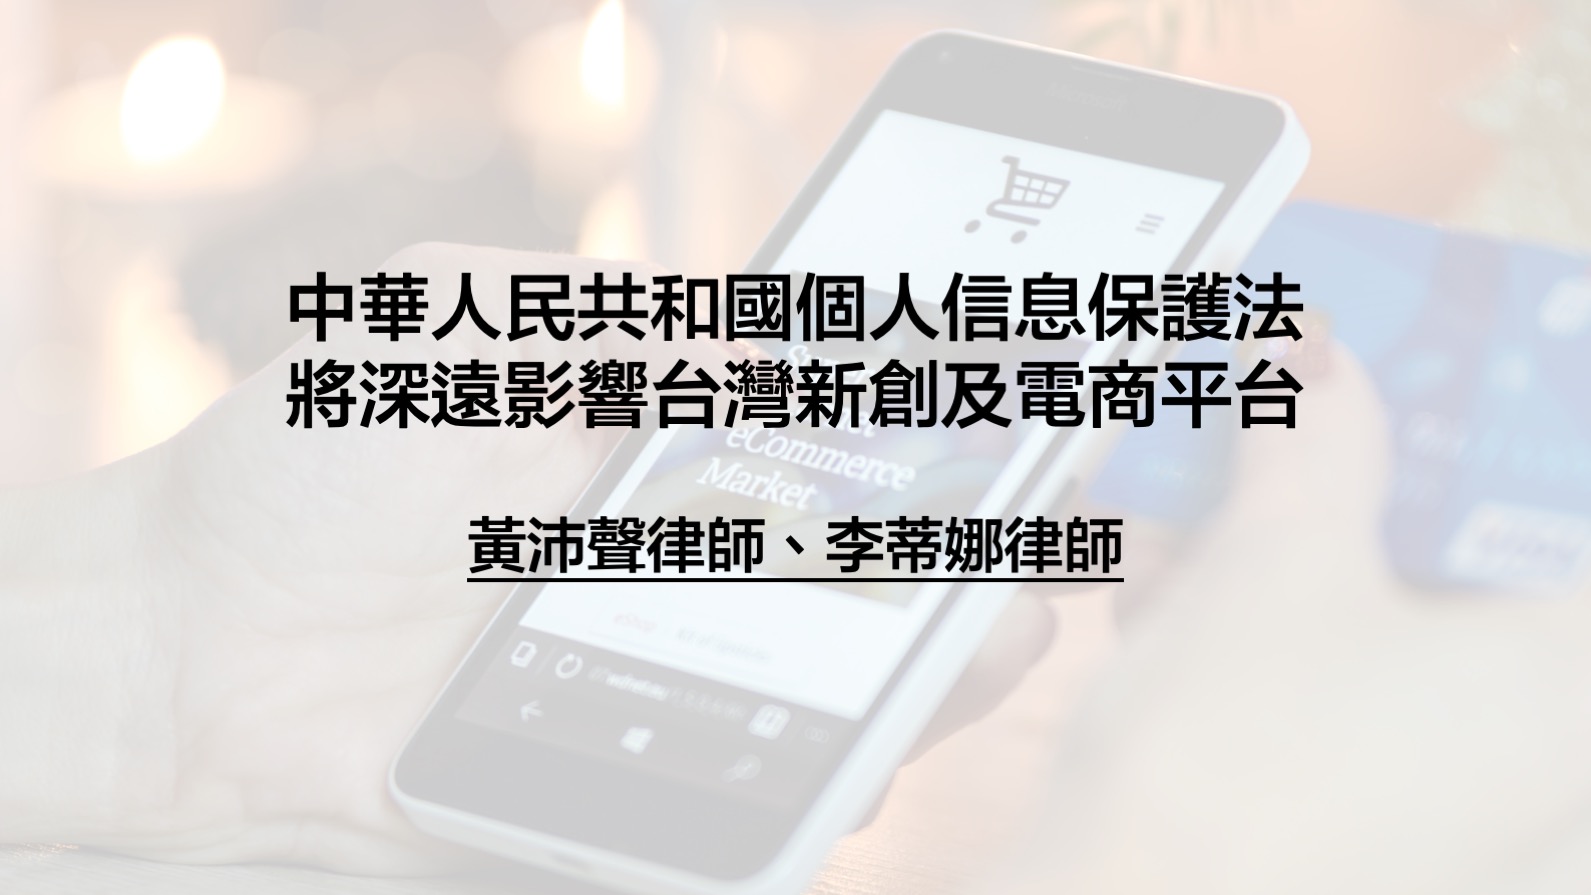 黃沛聲律師-個人信息保護法將深遠影響台灣新創及電商平台